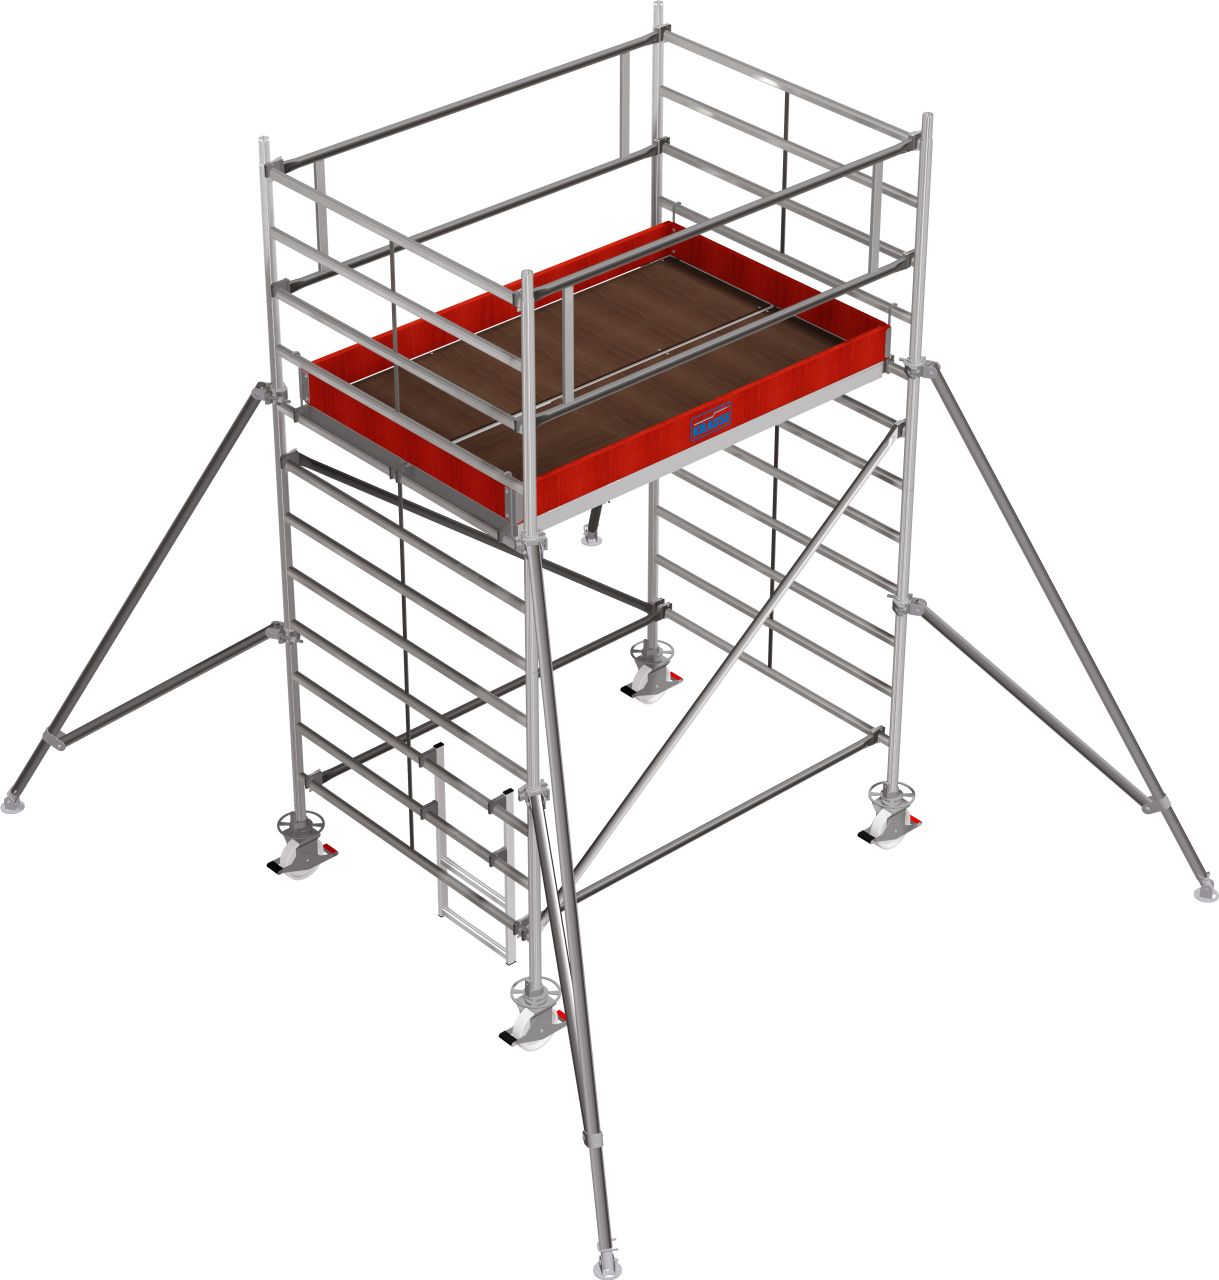 Дополнительное изображение Stabilo 5000 рабочая высота 4,2 м, размер площадки (2x1.5 м)